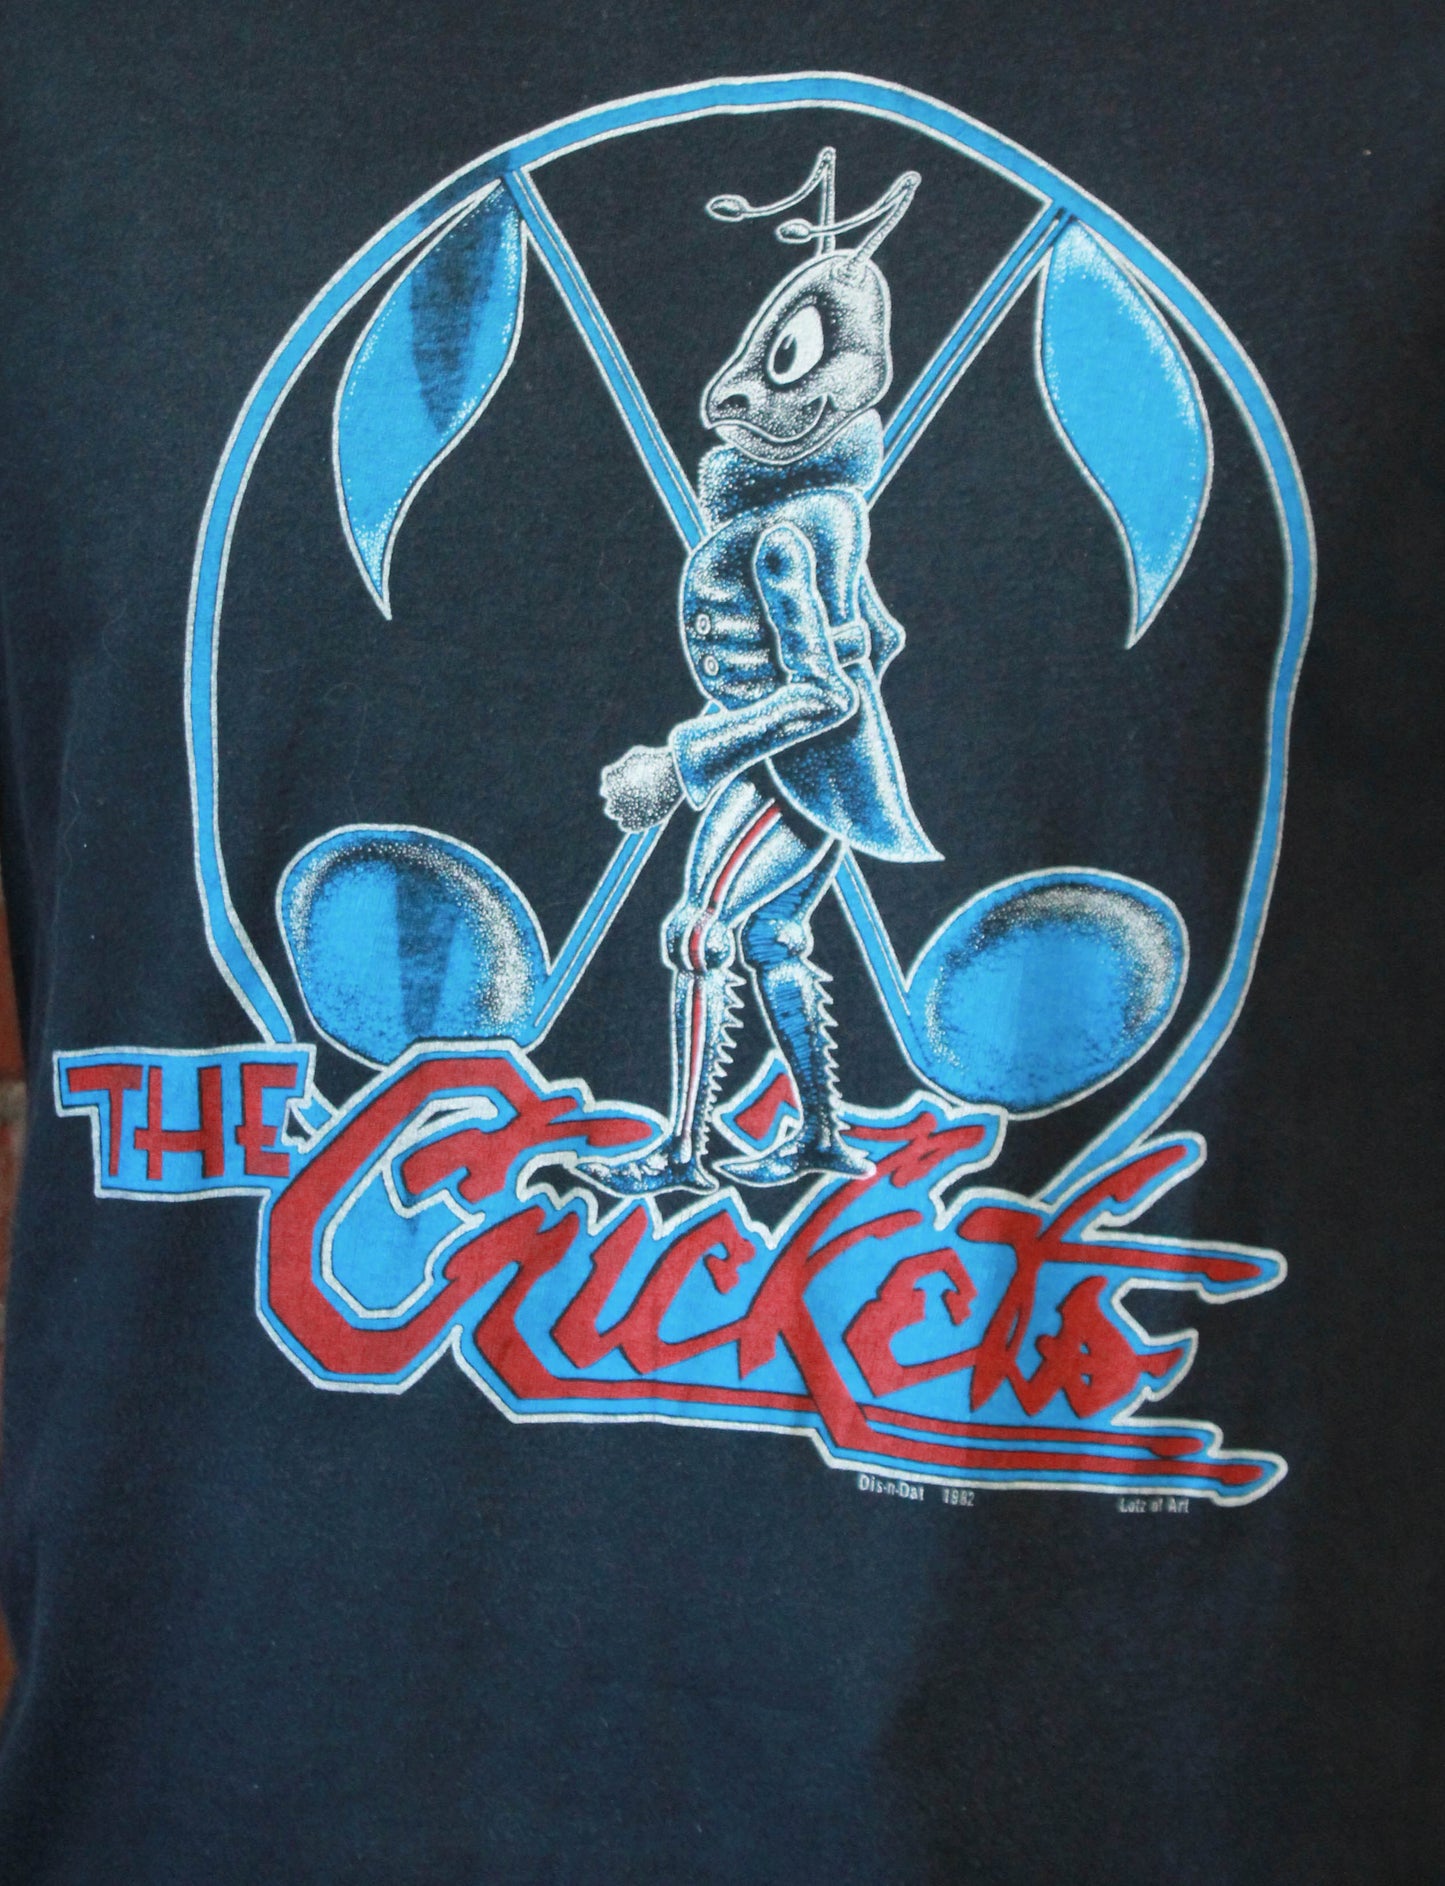 Vintage The Crickets Concert T Shirt 1982 Tour Unisex Medium